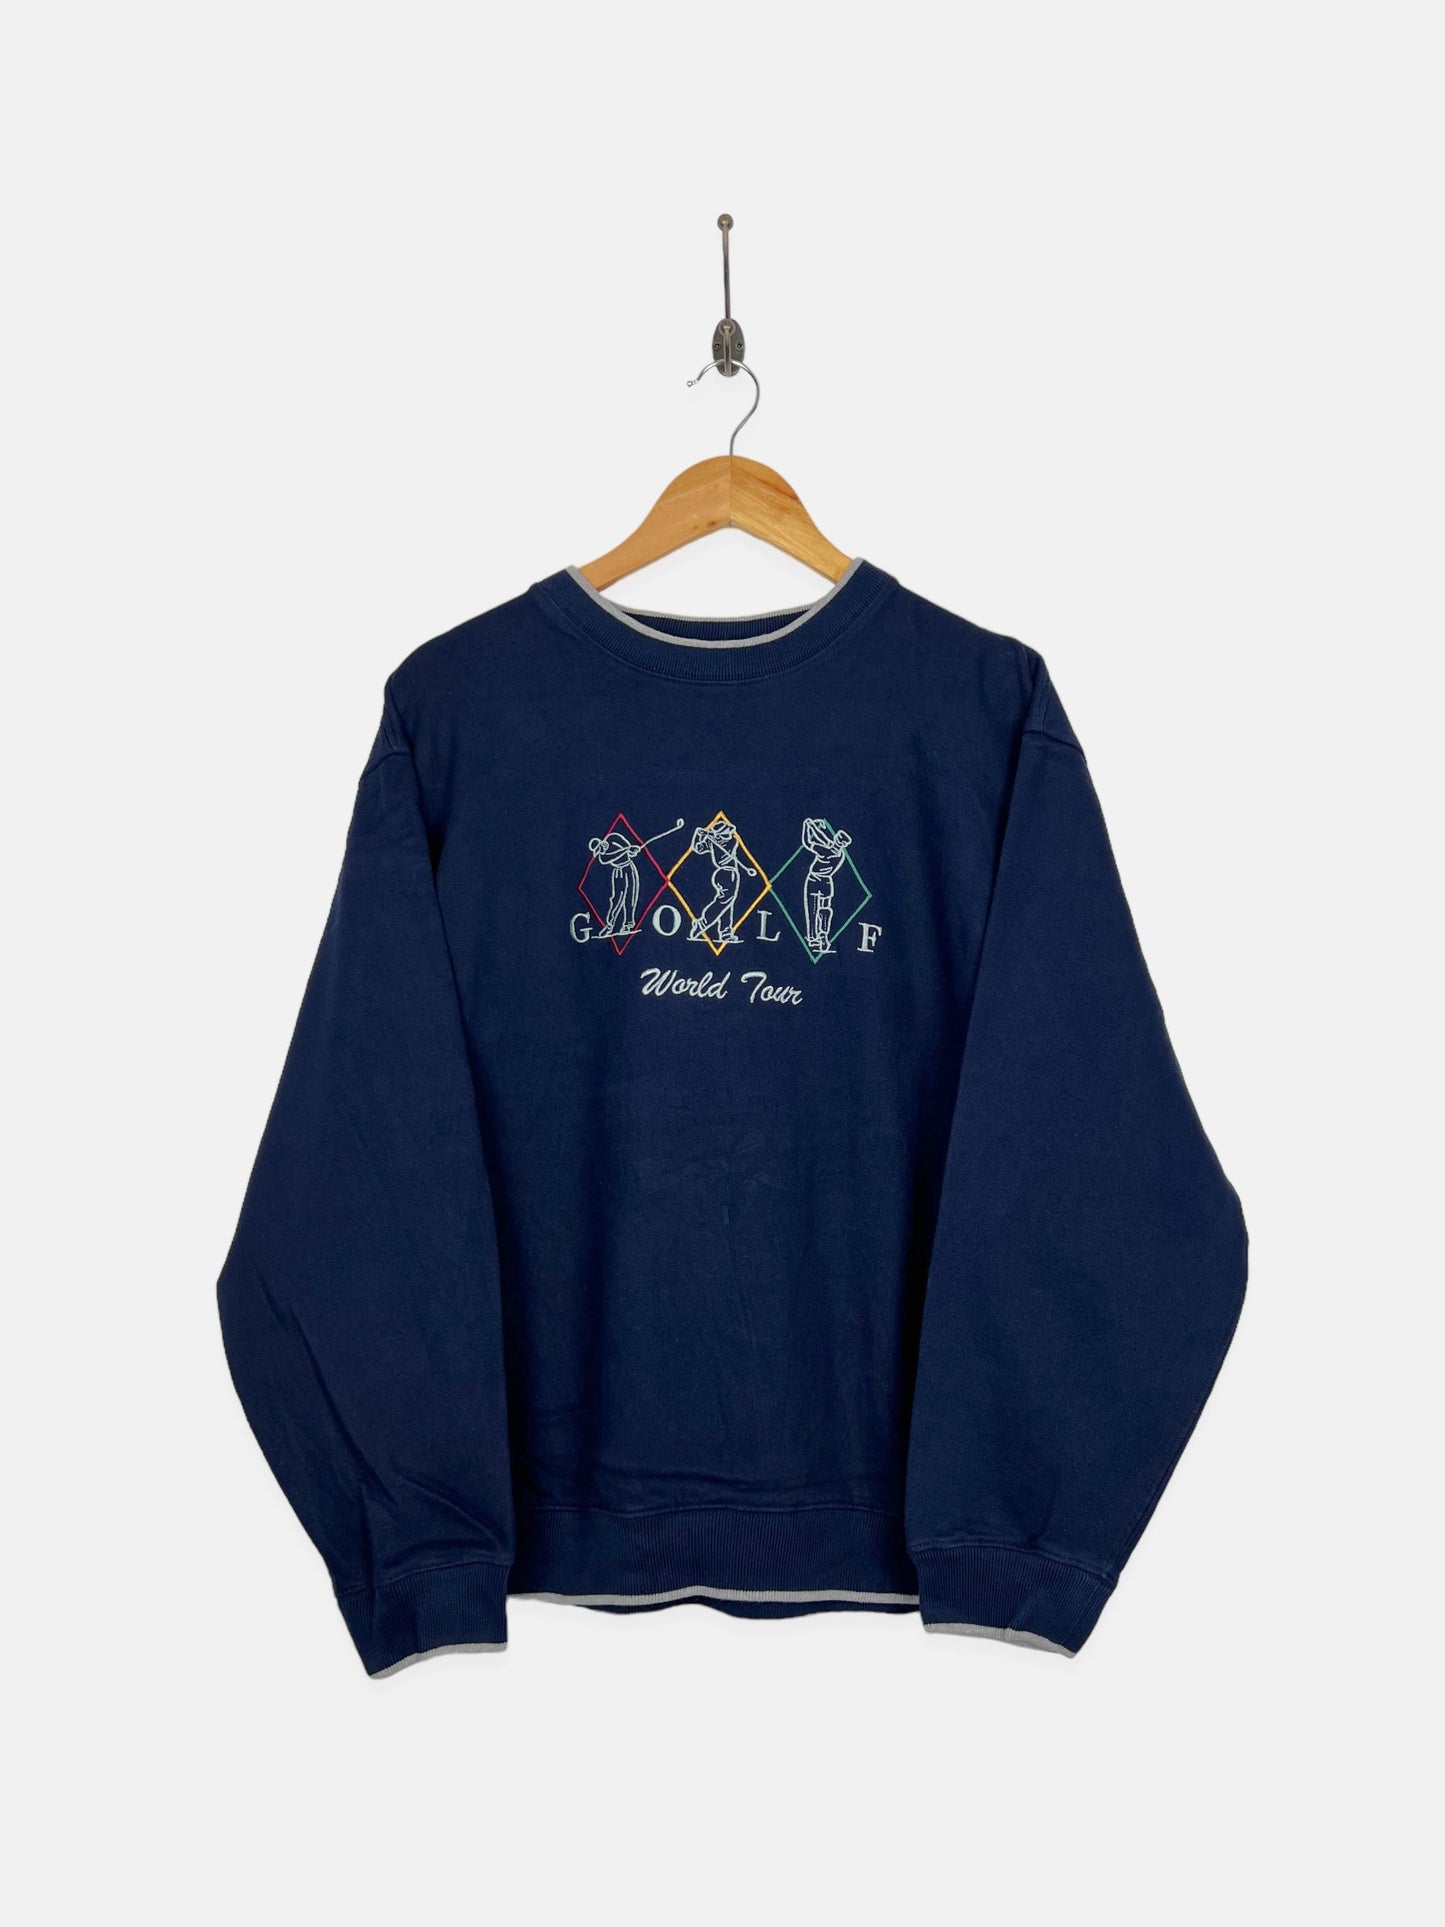 90's Golf World Tour Embroidered Vintage Sweatshirt Size M